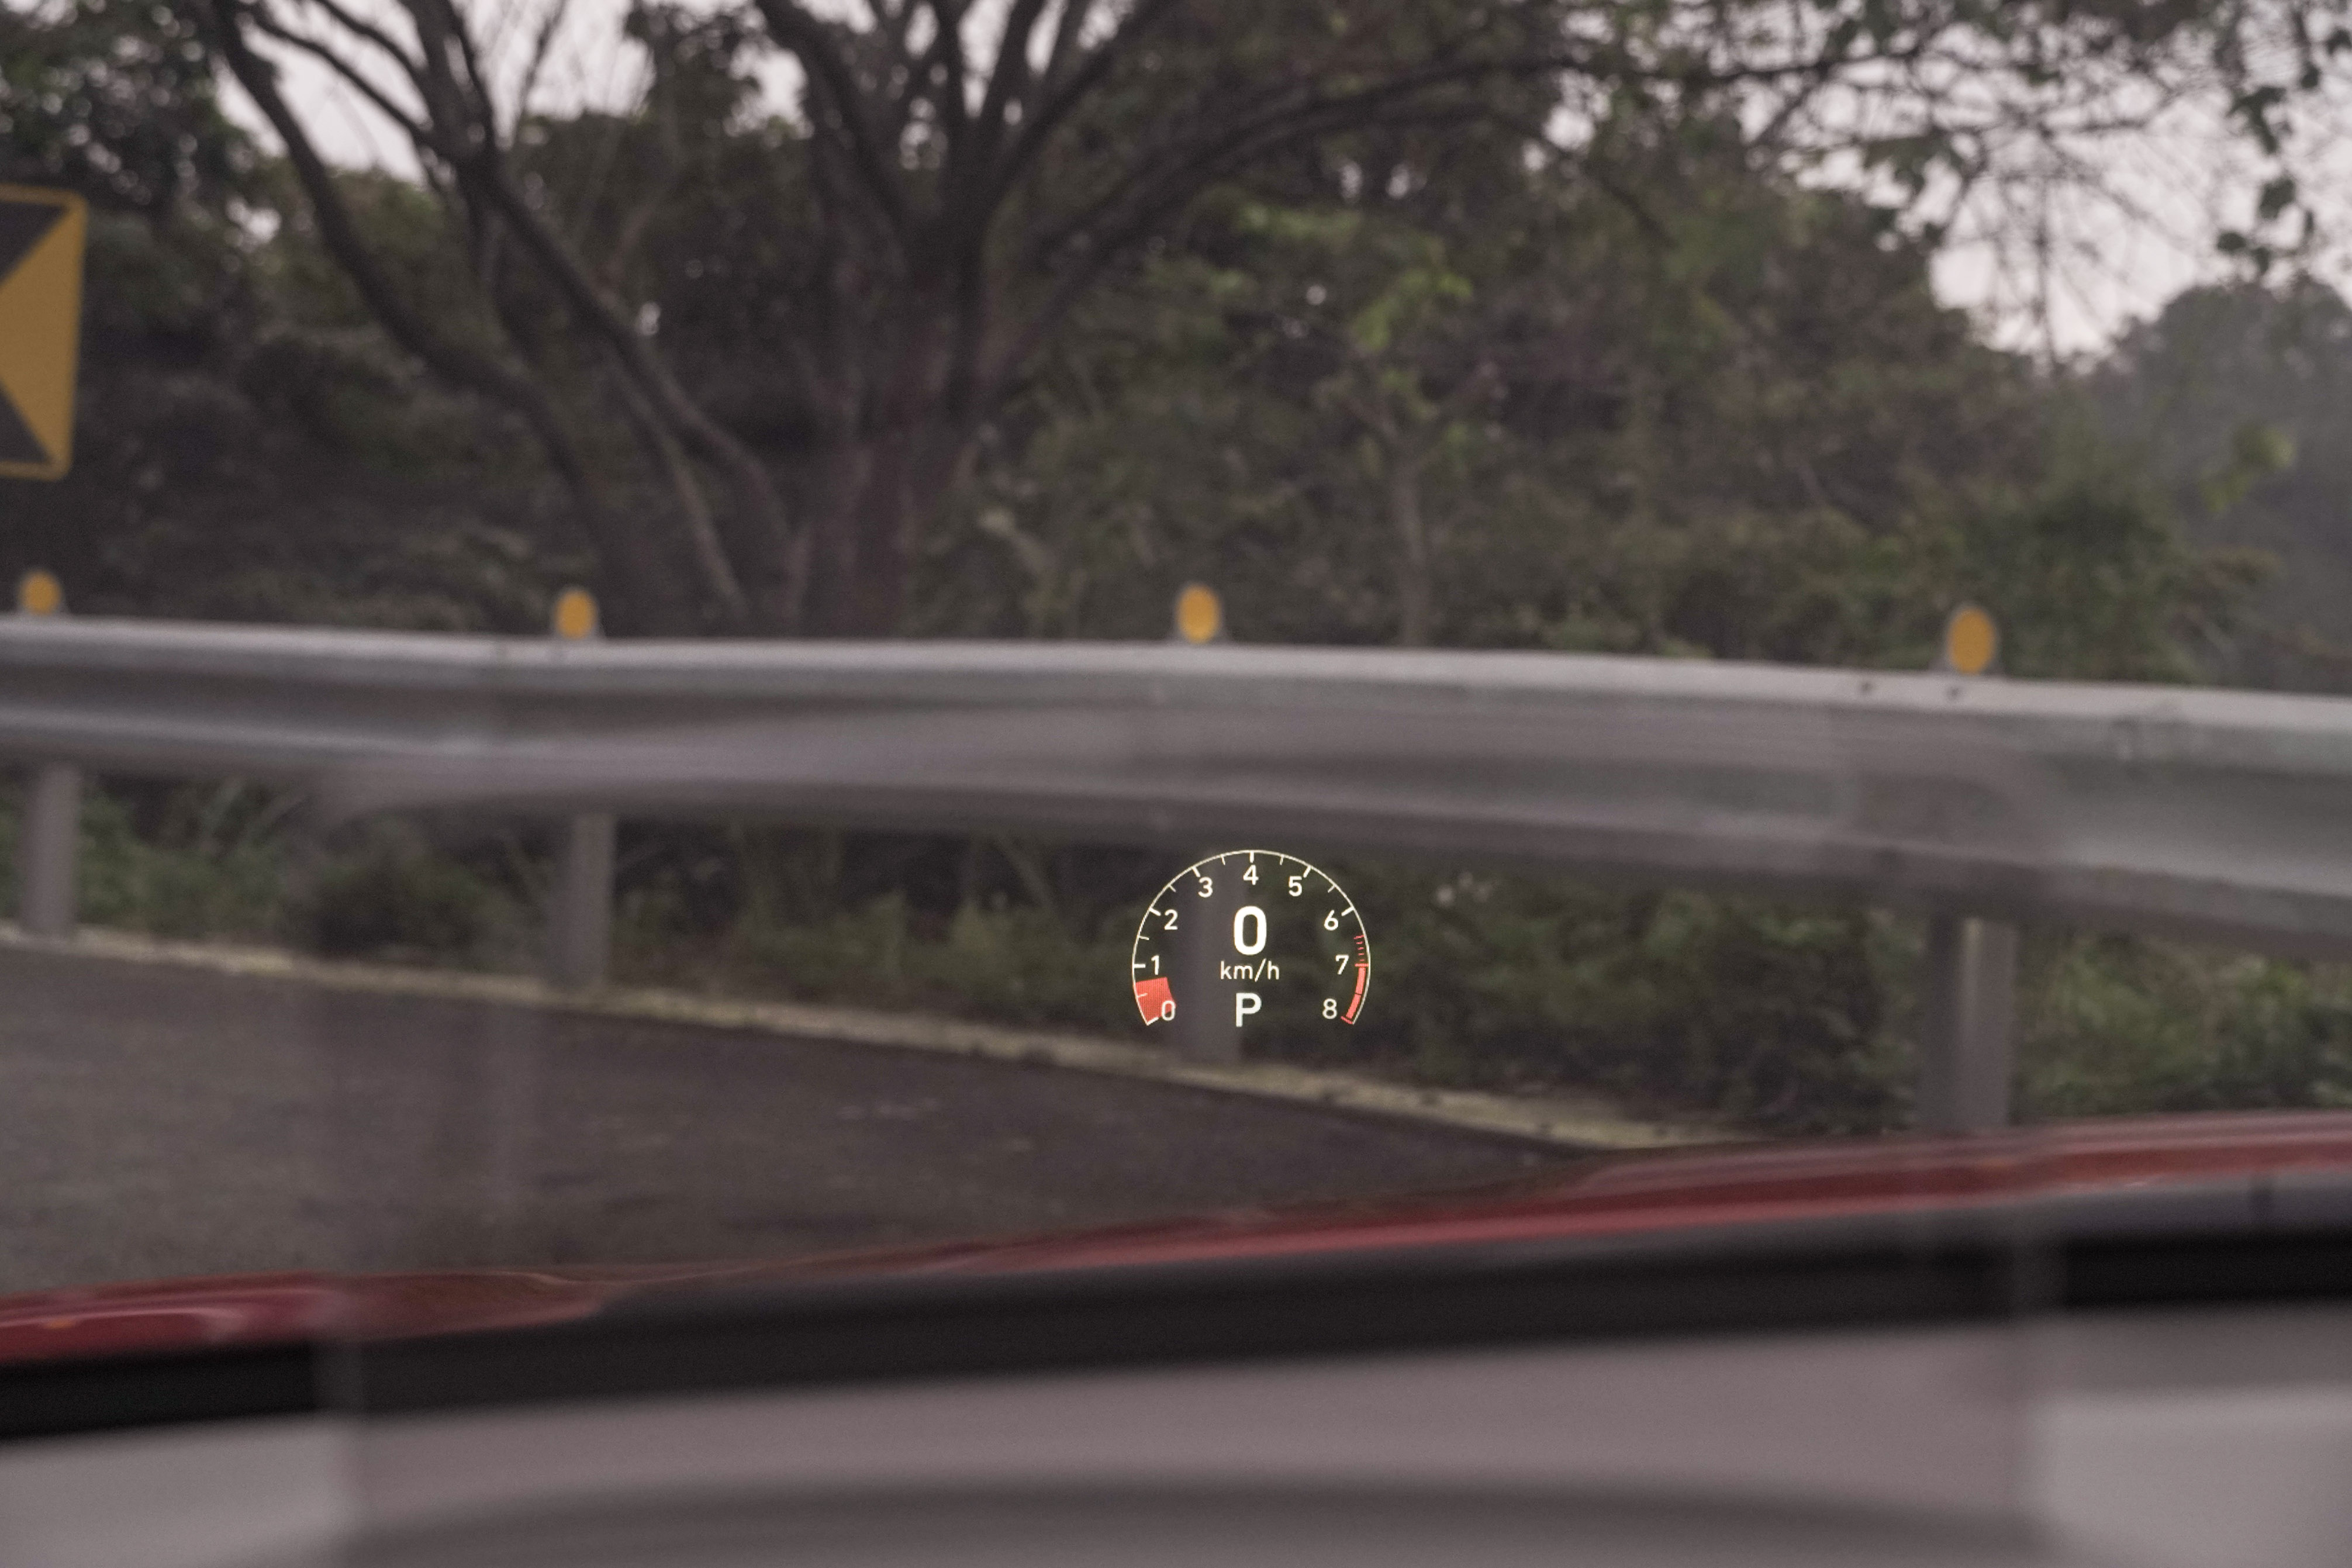 抬頭顯示器在 Sport 模式下會顯示轉速表、車速及檔位。